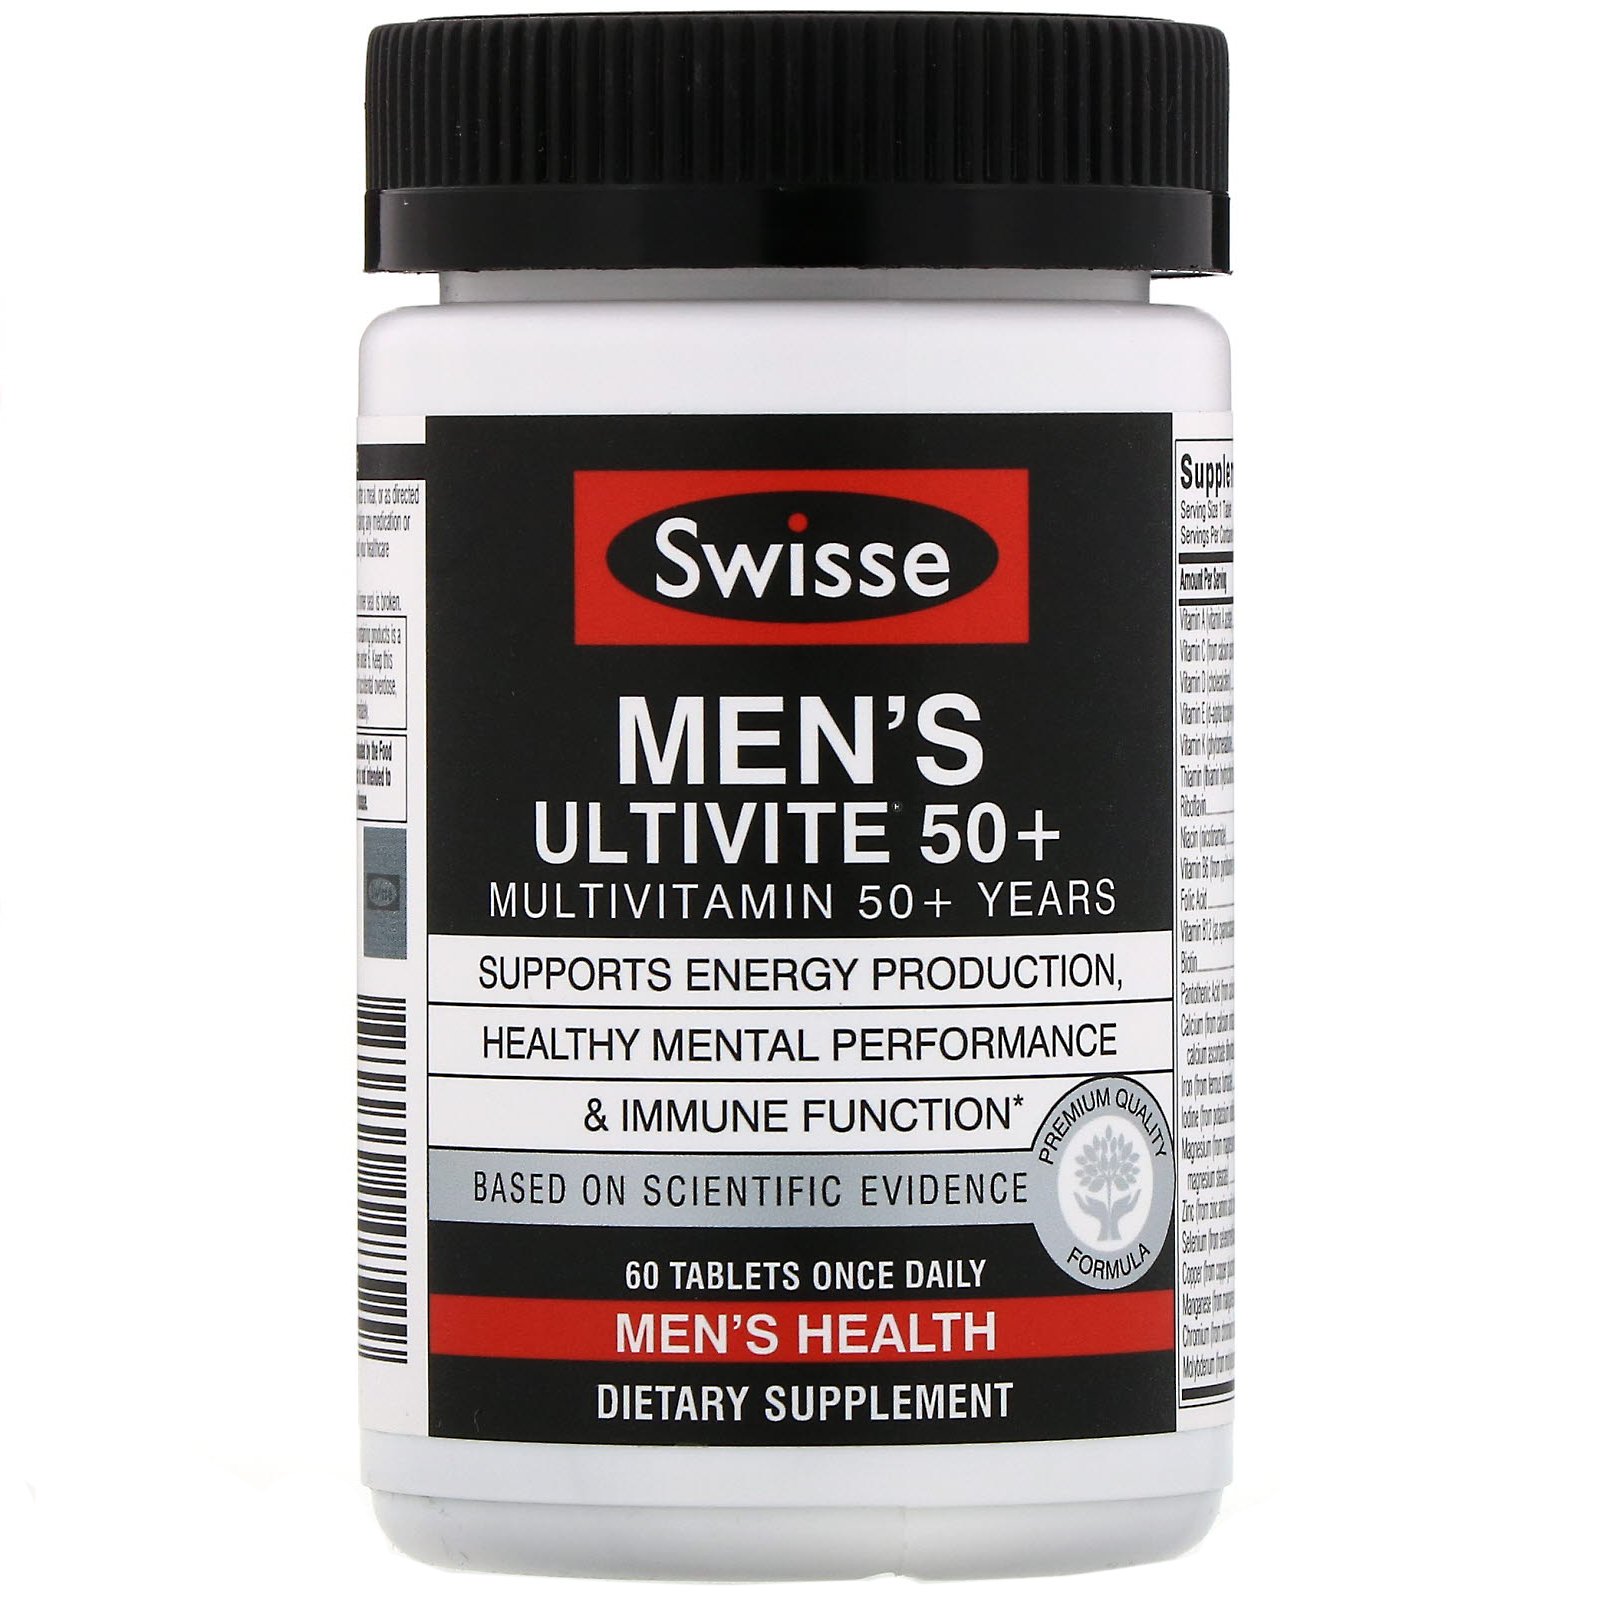 Мультивитамины витамины для мужчин. Swisse витамины для мужчин. Мультивитамины для мужчин. Multivitamin для мужчин. Мужские витамины 50+.